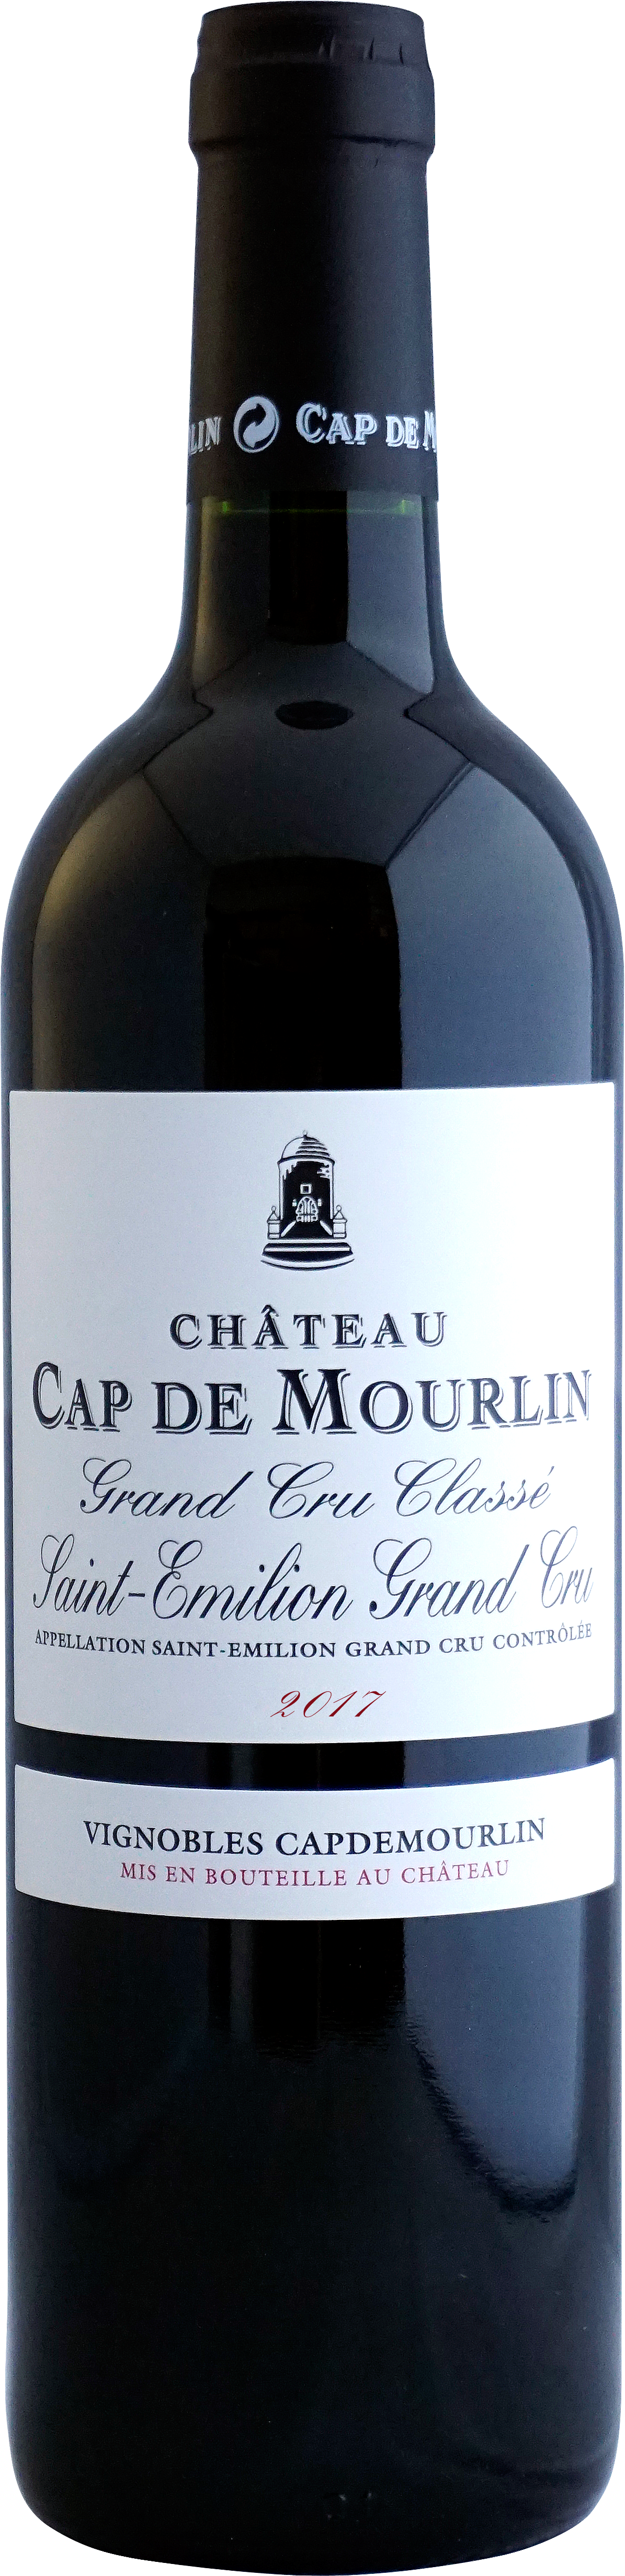 étiquette bouteille de vin Cap deMourlin